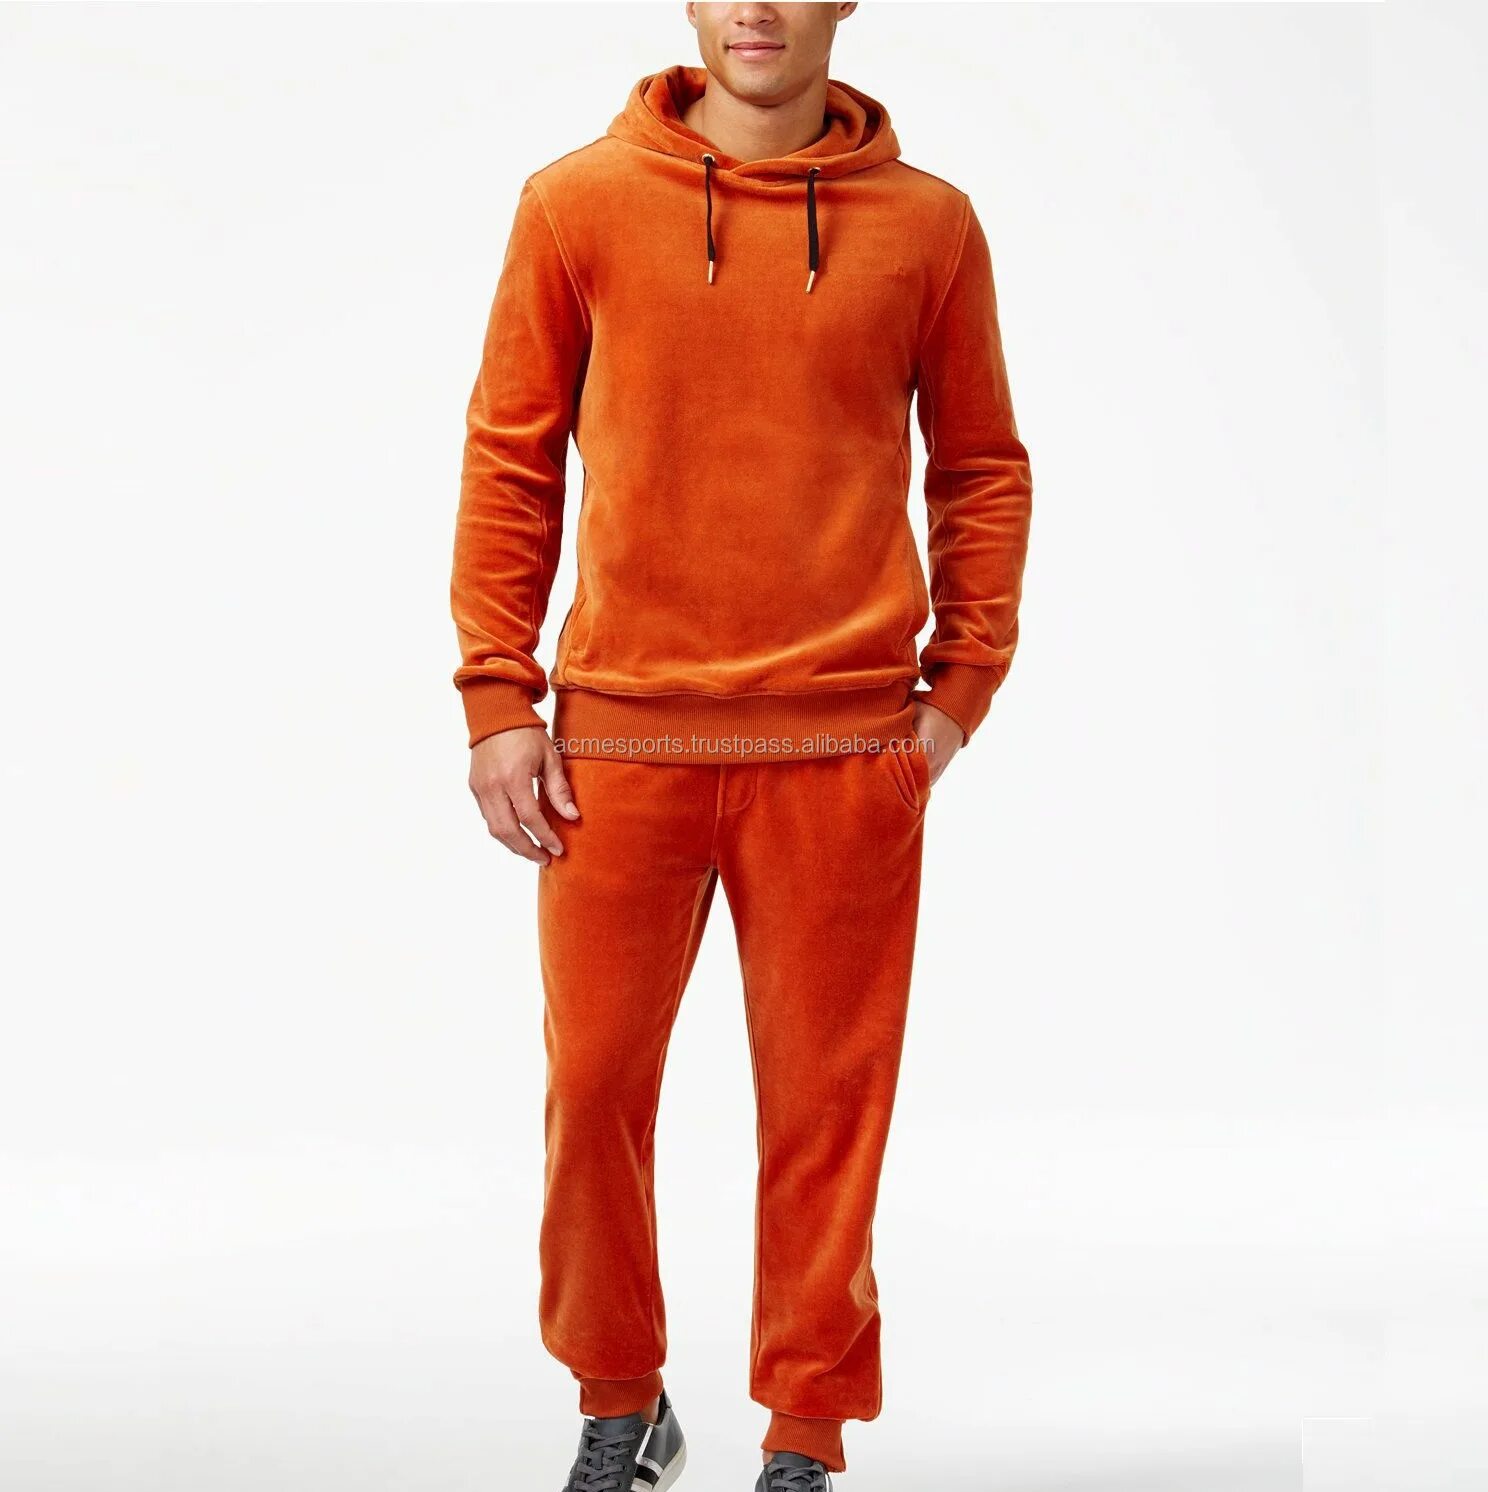 Оранжевый спортивный костюм. Велюровый спортивный костюм мужской Sean John. Sean John спортивный костюм. Оранжевый спортивный костюм мужской адидас. Велюровый костюм адидас мужской.